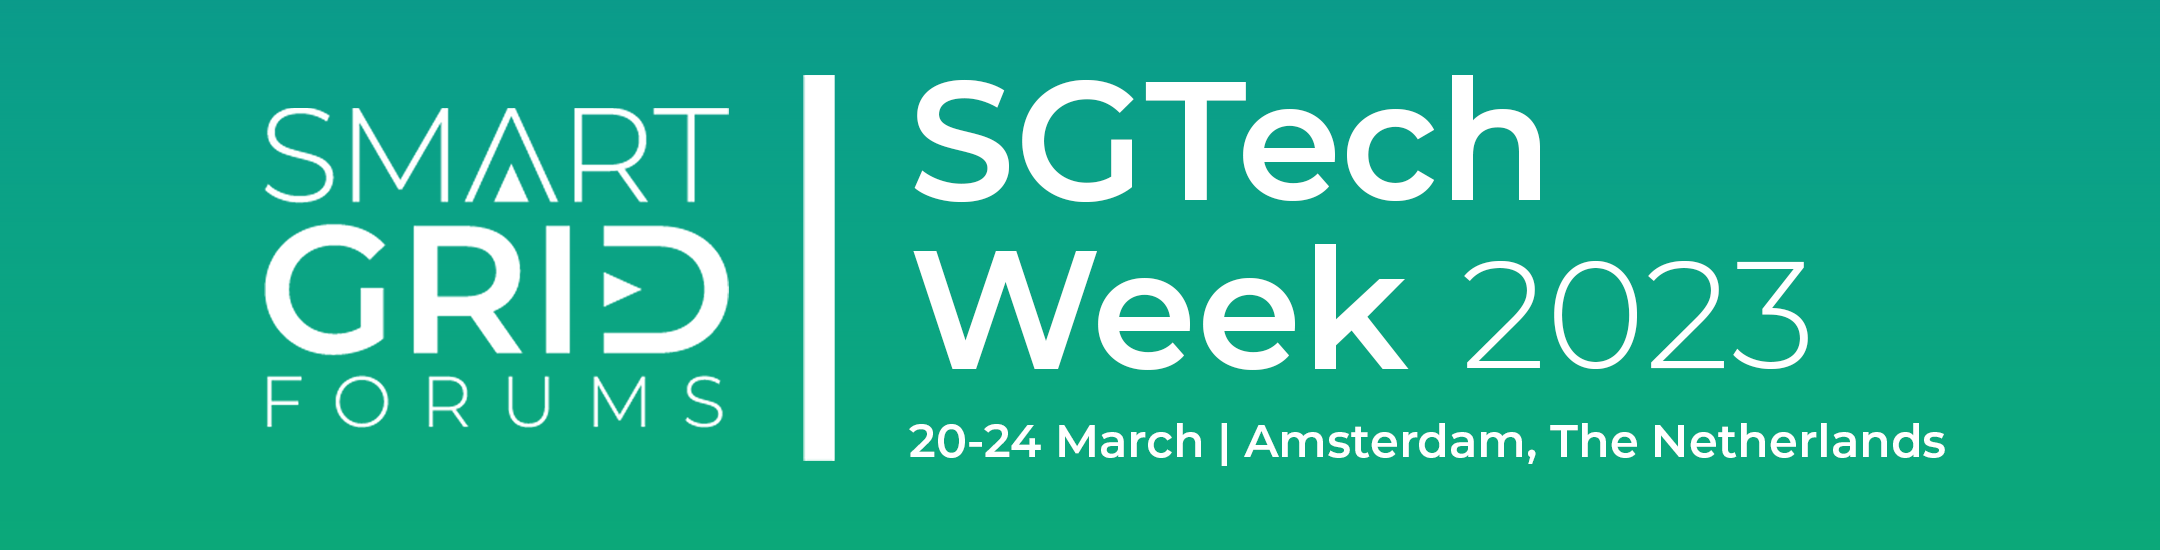 SGTech Week 2023, Amsterdam, Noord-Holland, Netherlands